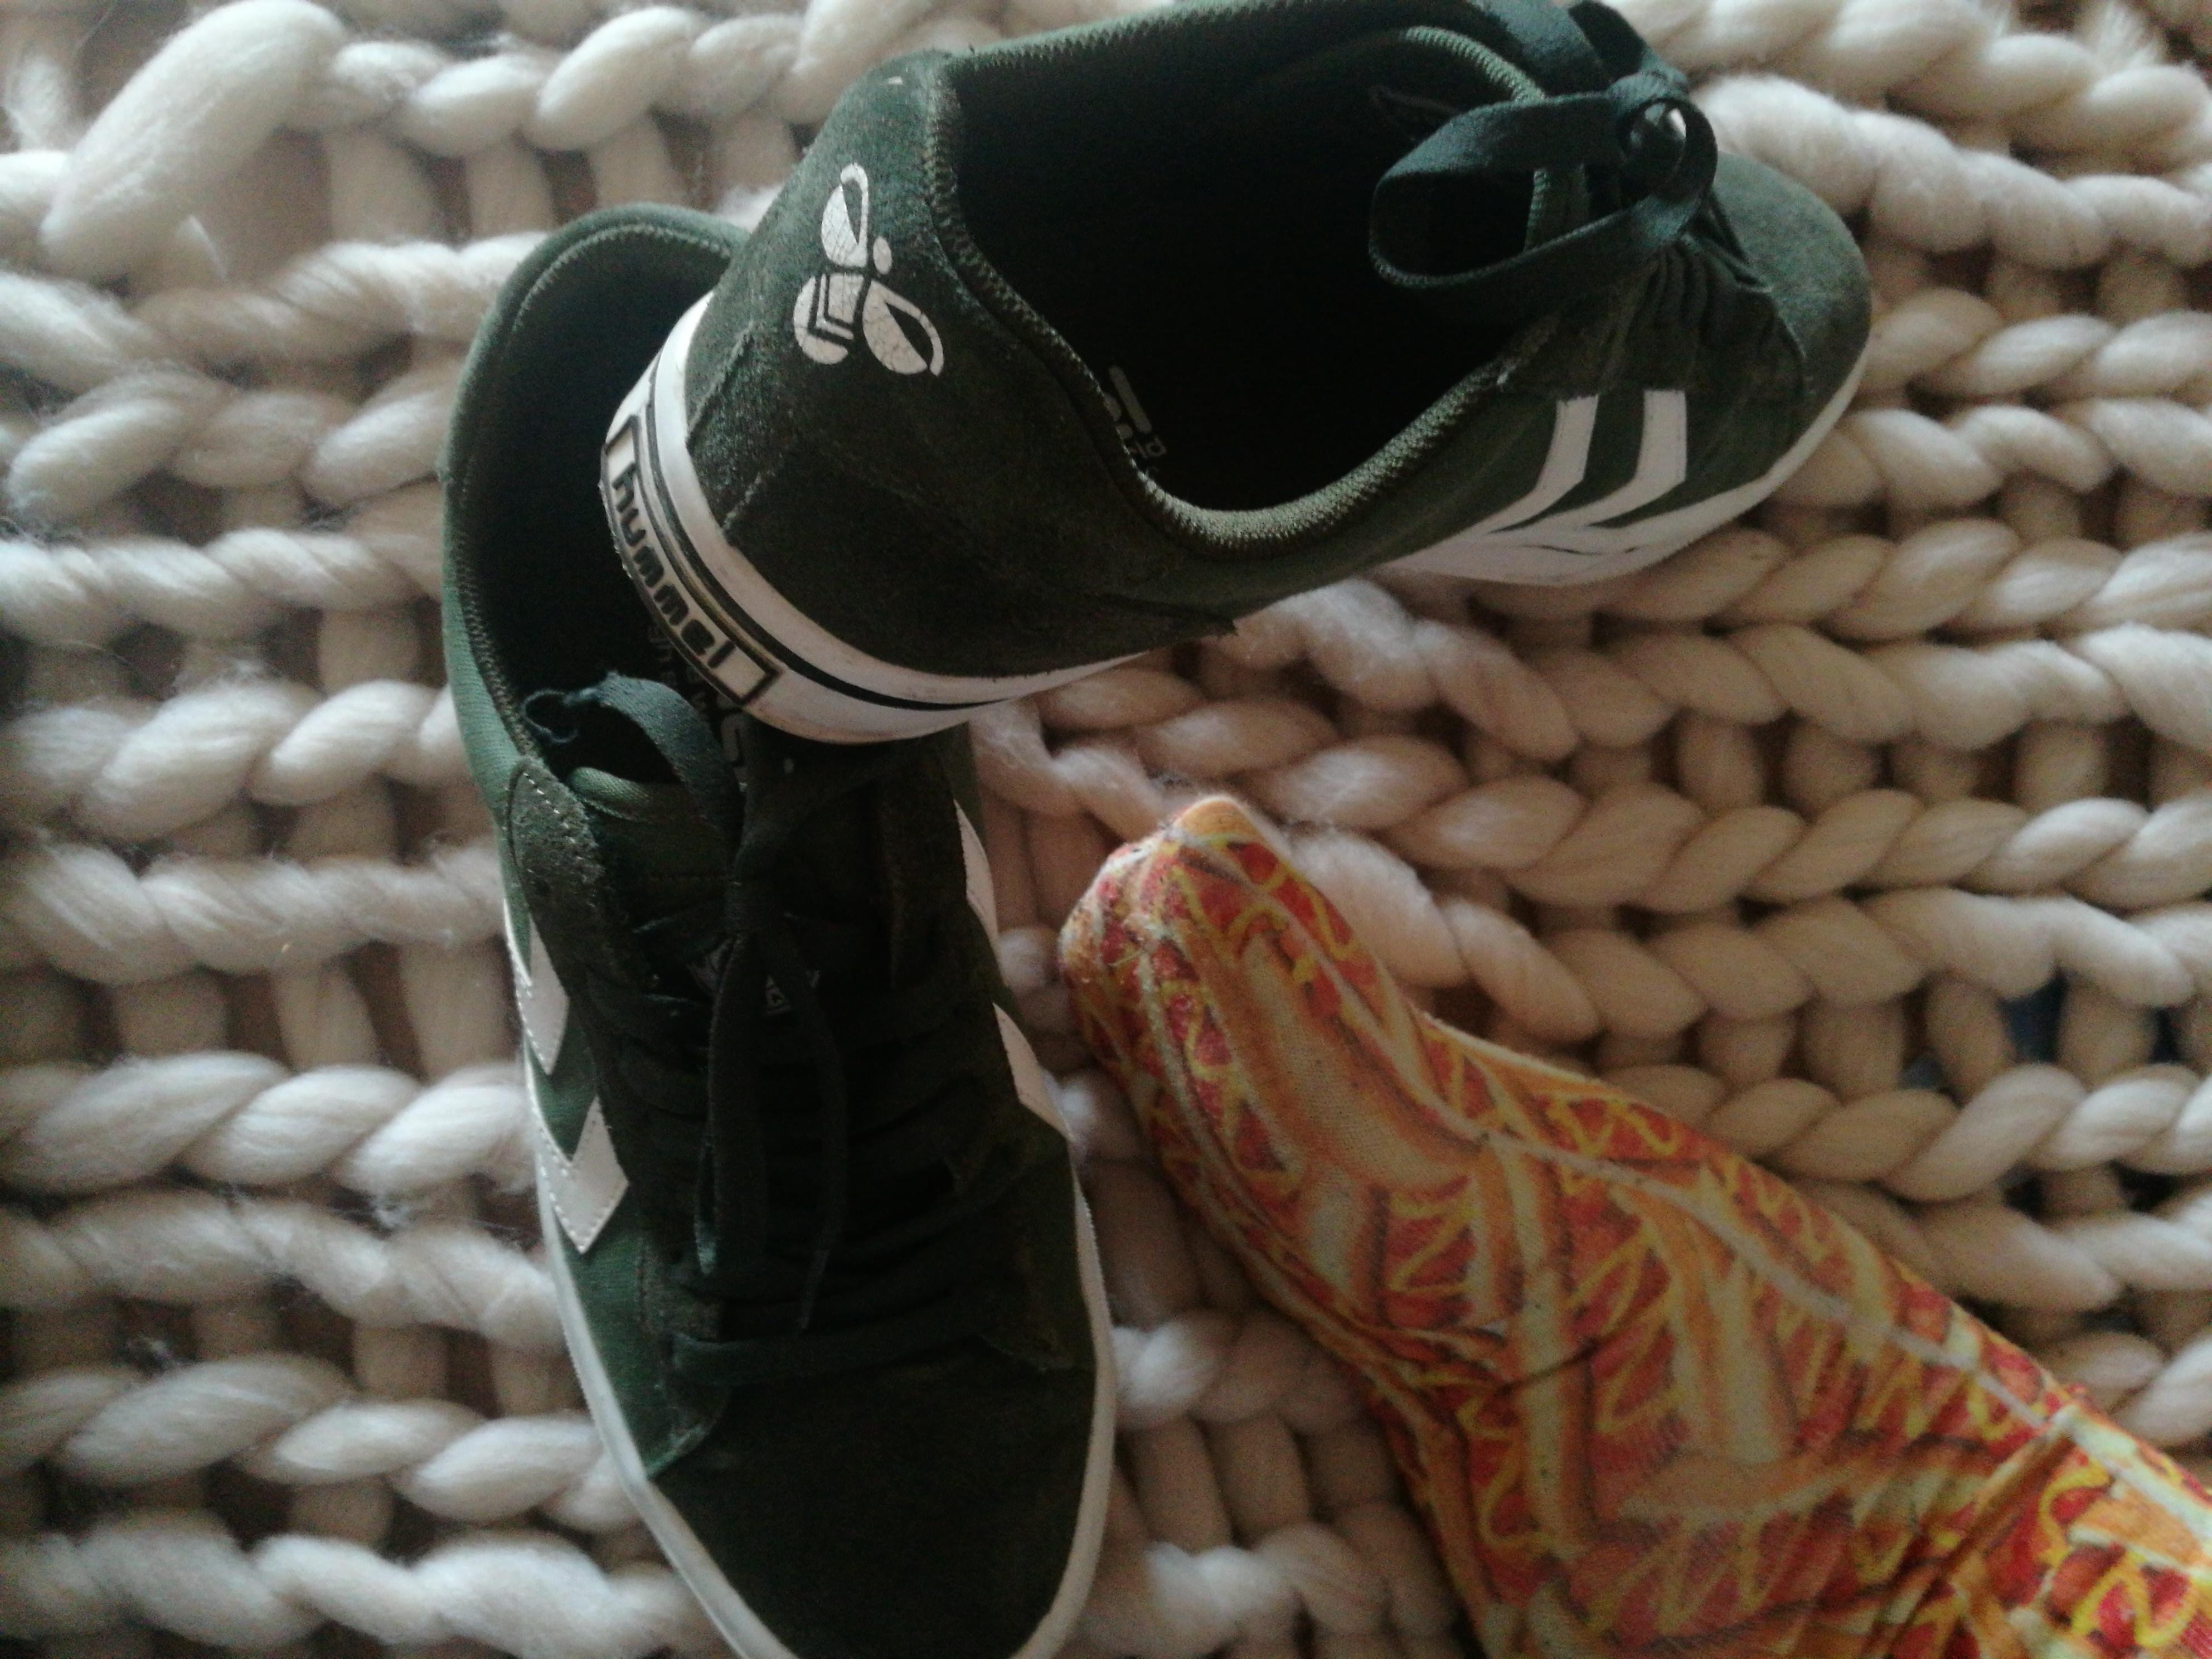 #sneaker #sneakers von HUMMEL in olivgrün - meine neue große Liebe